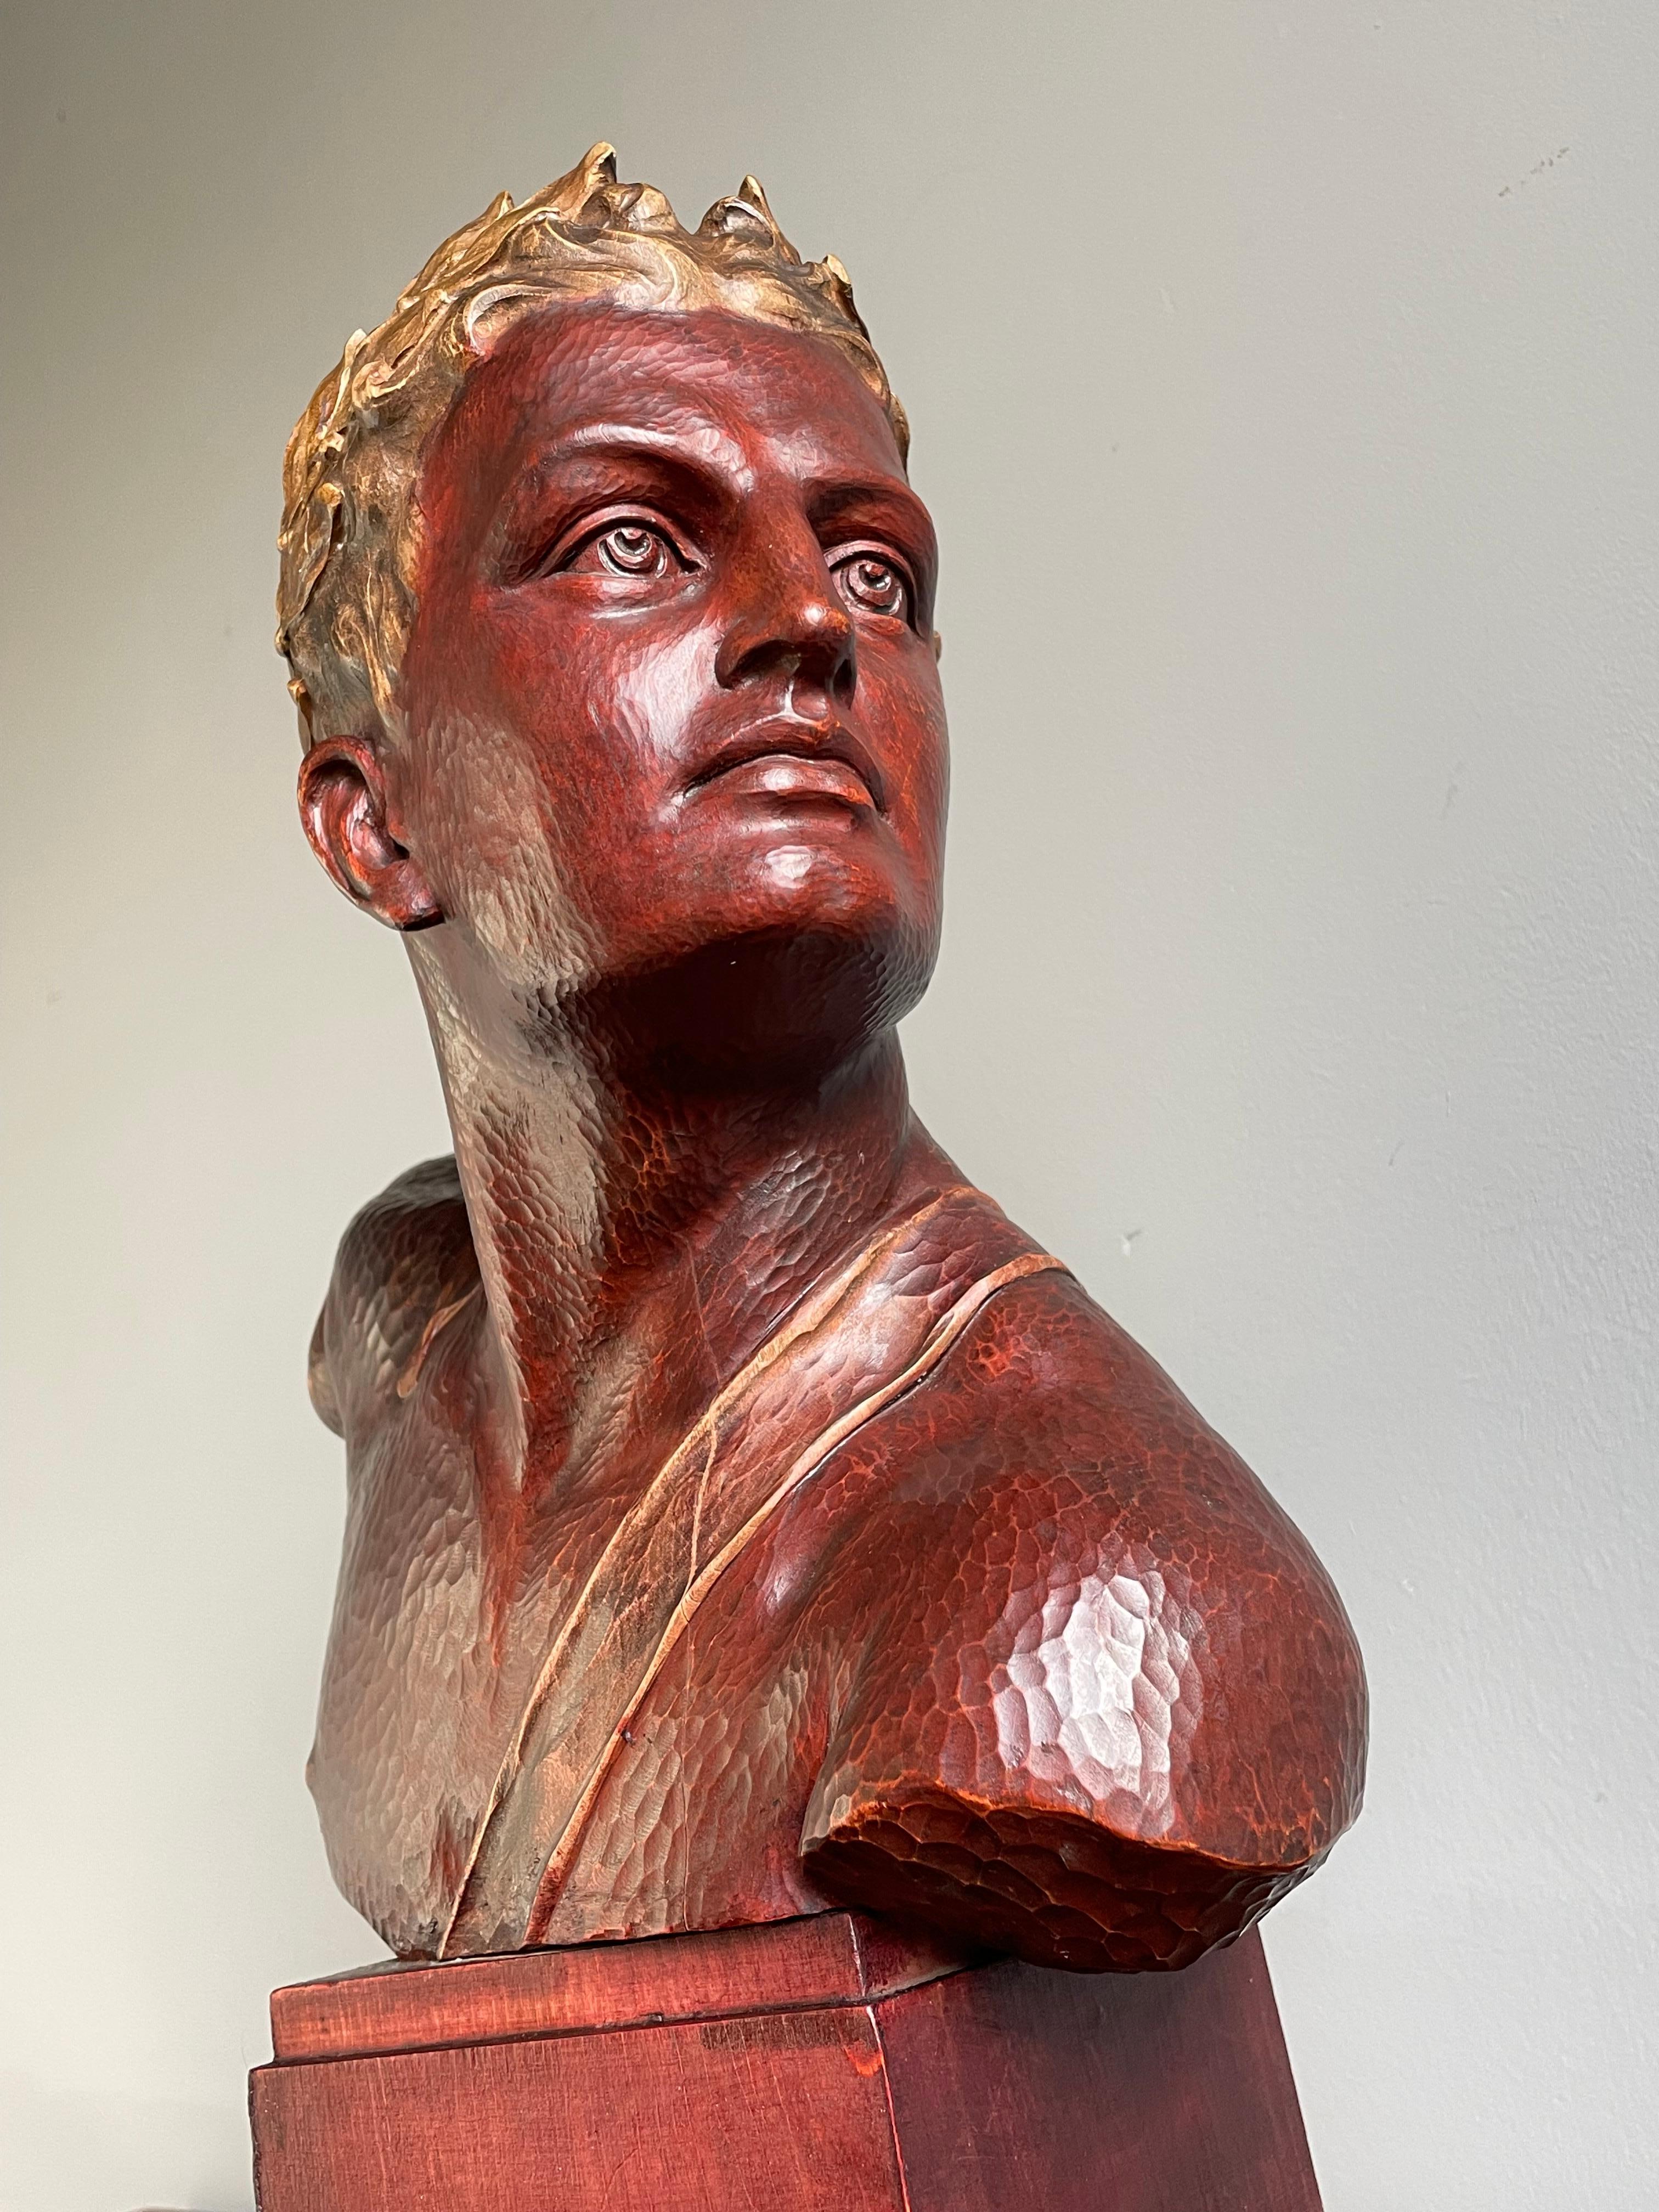 Buste en bois massif d'un champion olympique par (le professeur) Otto Poertzel (1876 - 1963).

Ce superbe buste d'un jeune athlète masculin est d'une qualité et d'un état digne d'un musée. Le design géométrique de la base en bois et l'aspect frais